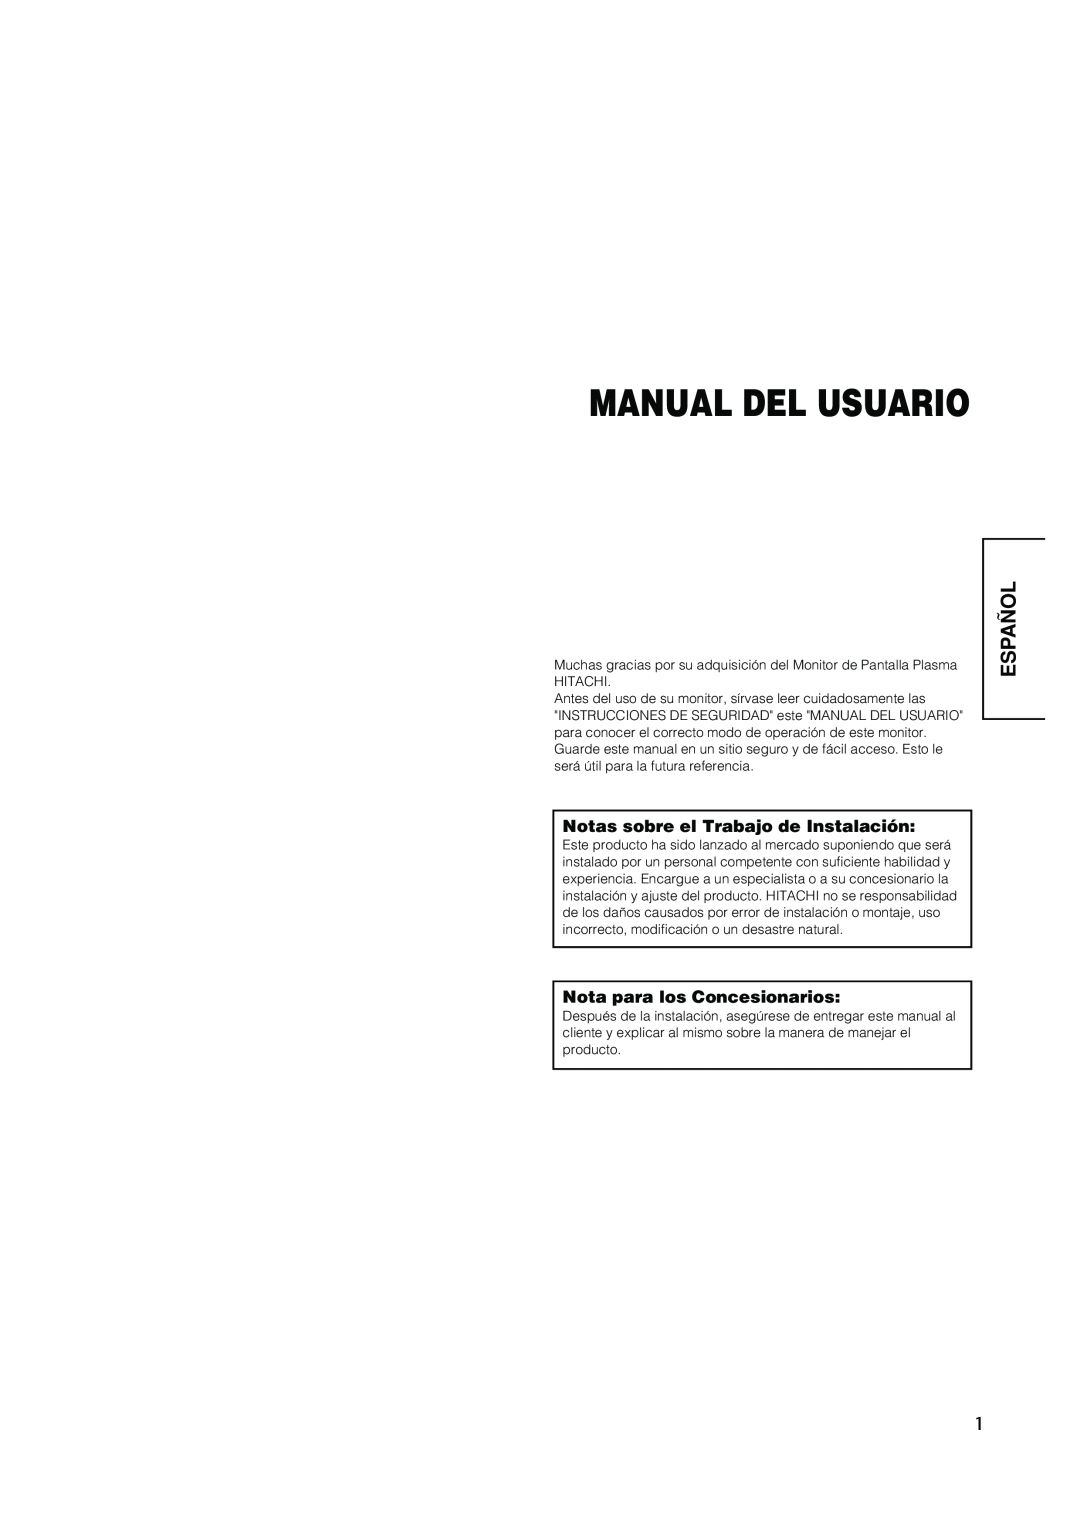 Hitachi PW1A user manual Español, Manual Del Usuario, Notas sobre el Trabajo de Instalación, Nota para los Concesionarios 